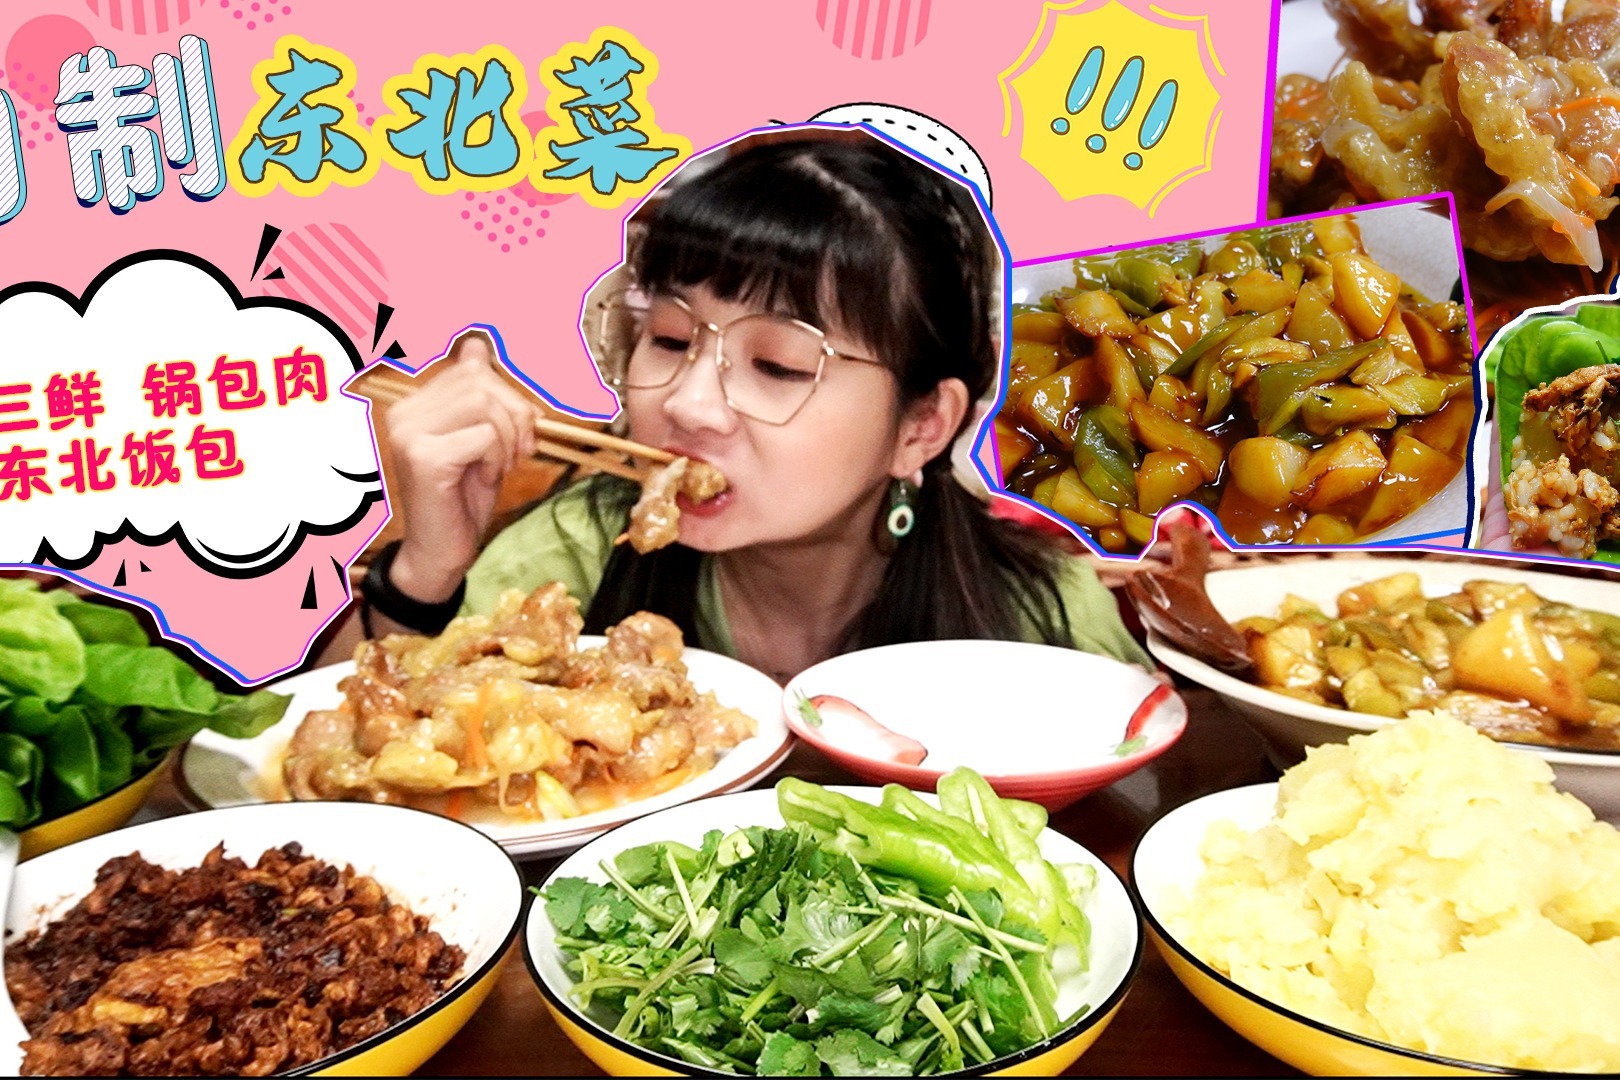 【小猪猪的vlog】宅家自制东北菜！锅包肉、地三鲜、东北饭包！